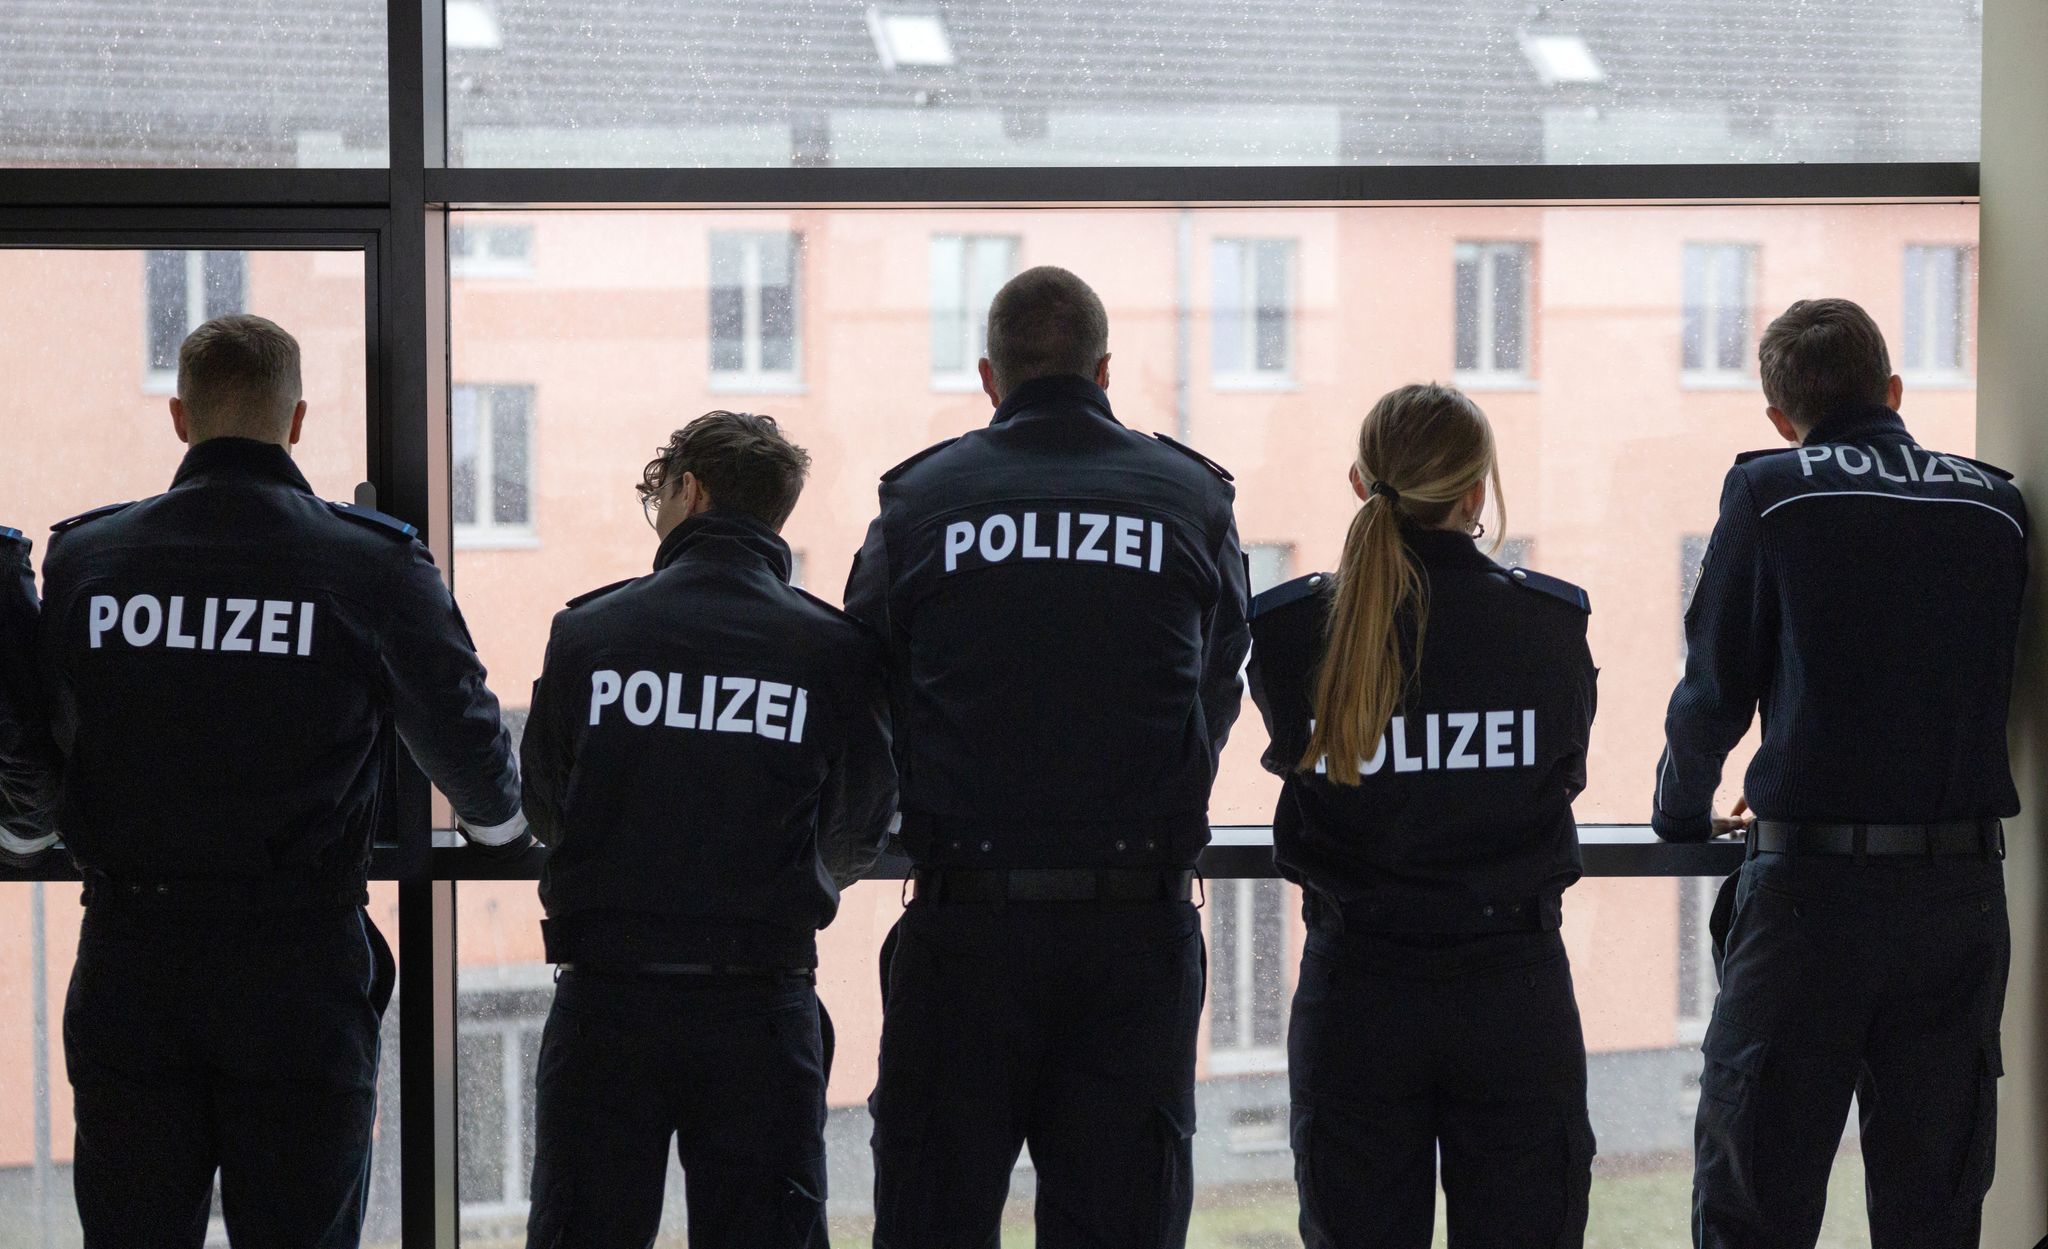 Bildungseinrichtung der Thringer Polizei 
Die Polizeischule in Meiningen geriet wegen schwerer Vorwrfe in die Schlagzeilen. Nun gibt es ein Ergebnis. Michael Reichel/dpa